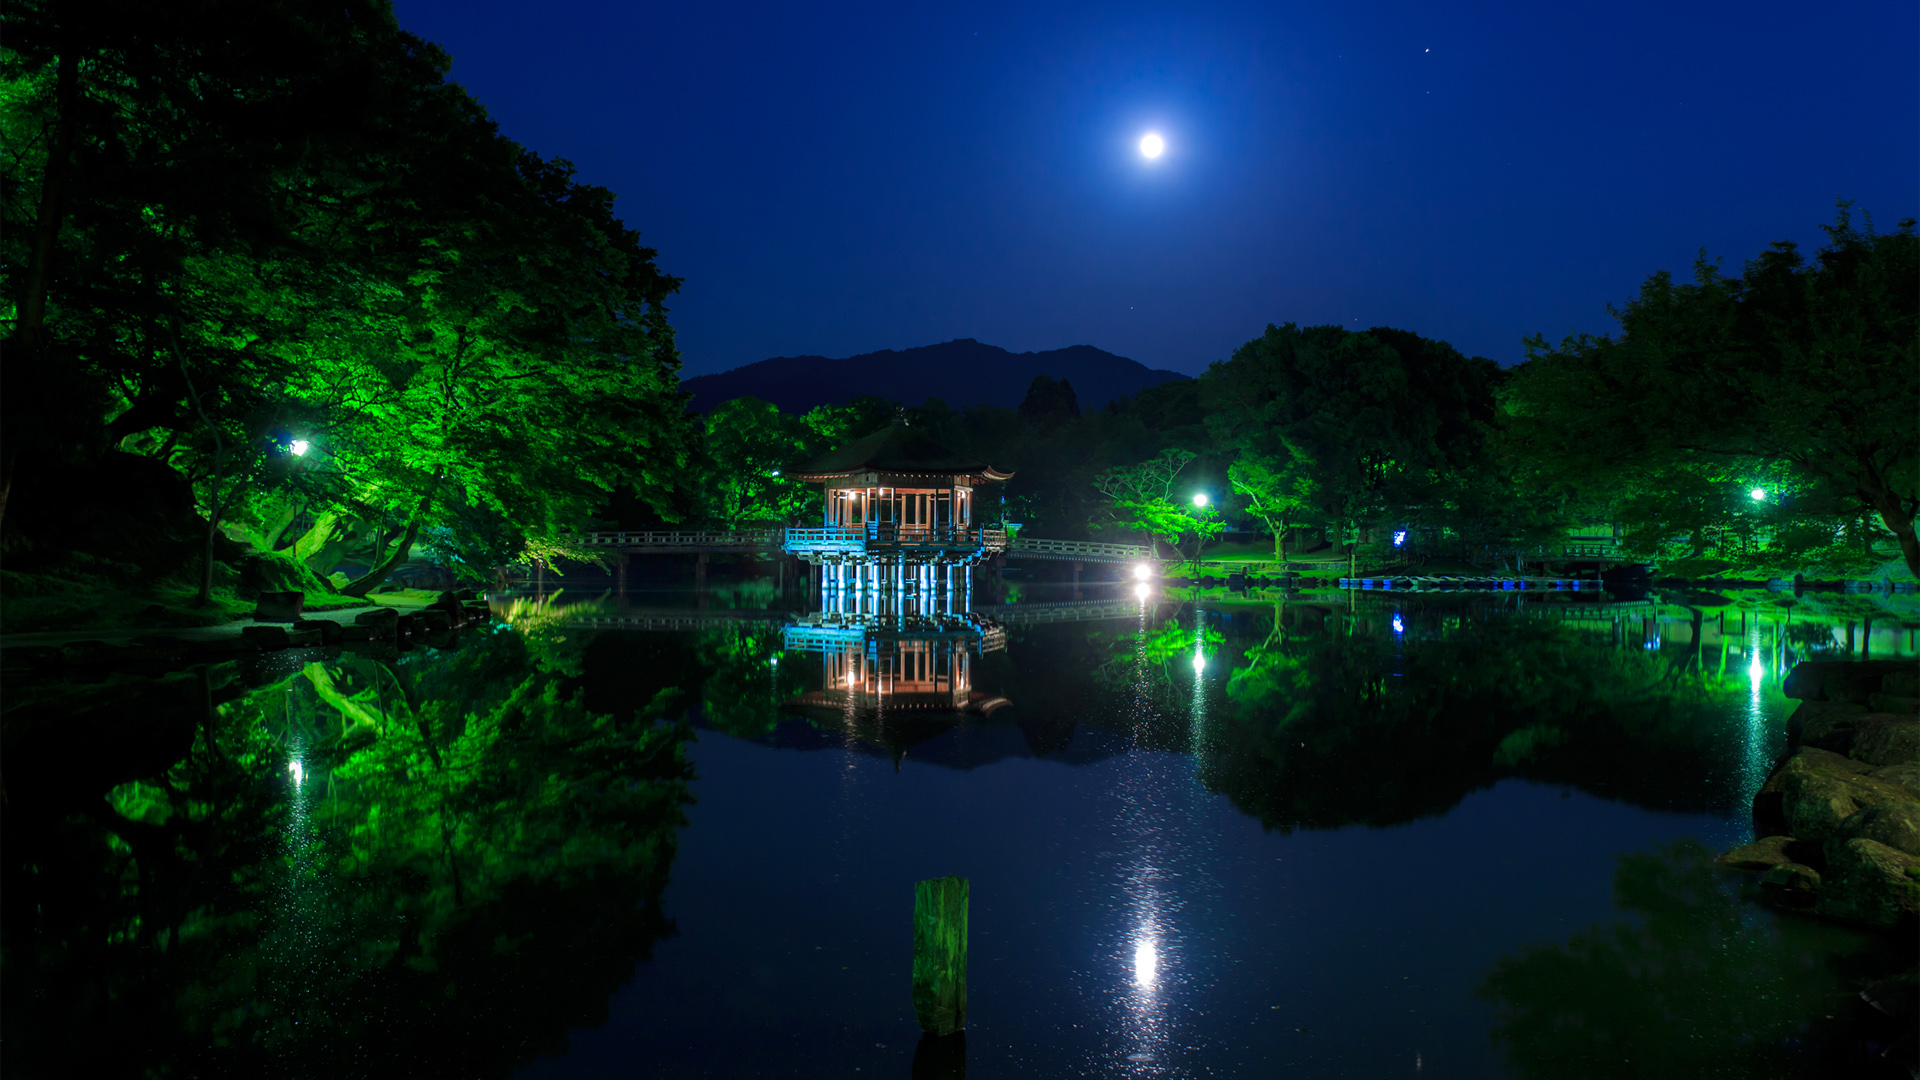 日本公园,树林,池塘,亭子,月亮,夜晚风景桌面壁纸